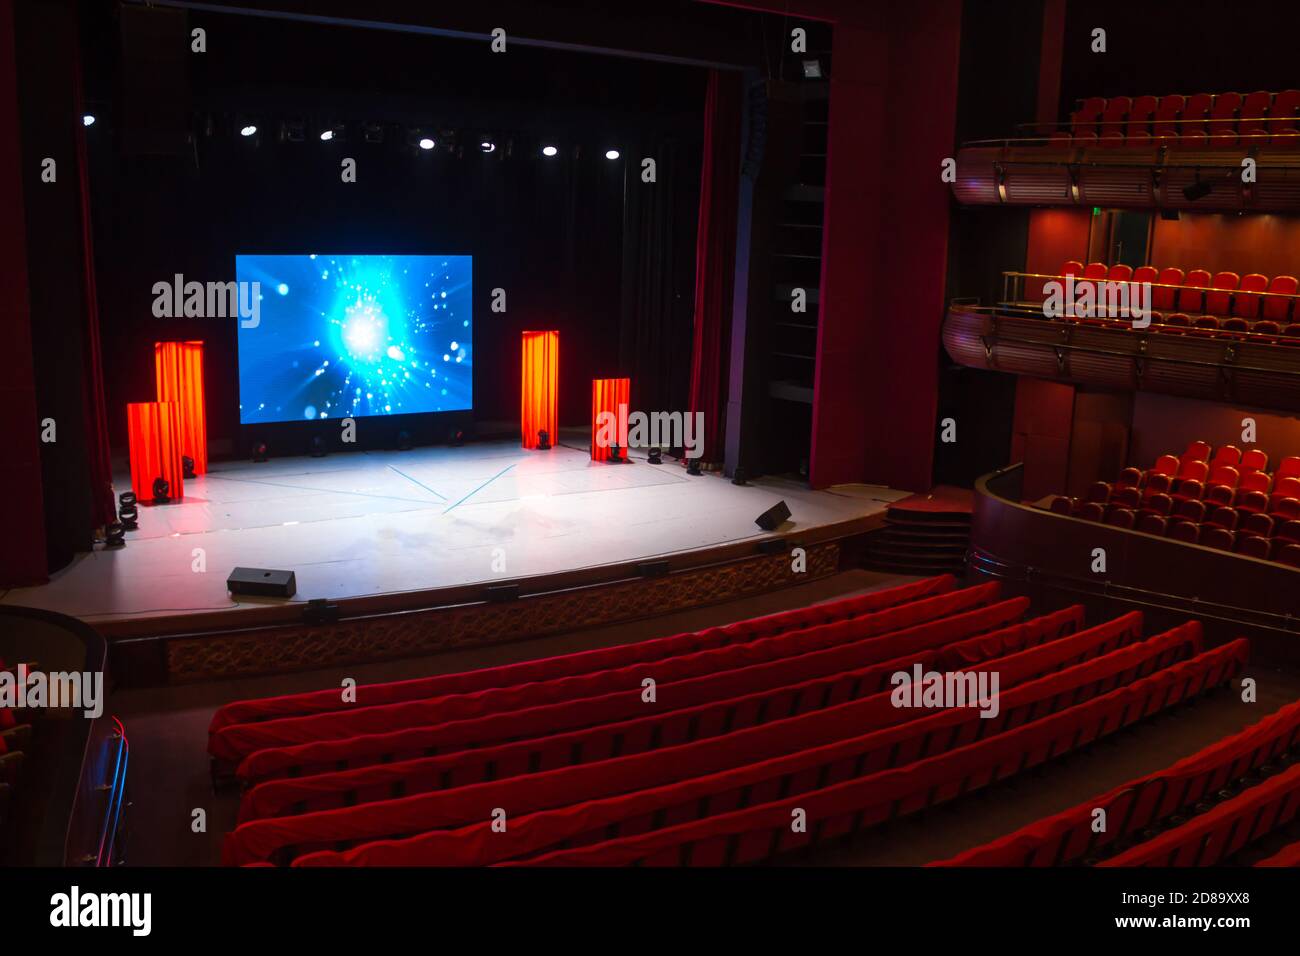 Klassisches Theater mit einer Leinwand auf der Bühne Stockfotografie - Alamy